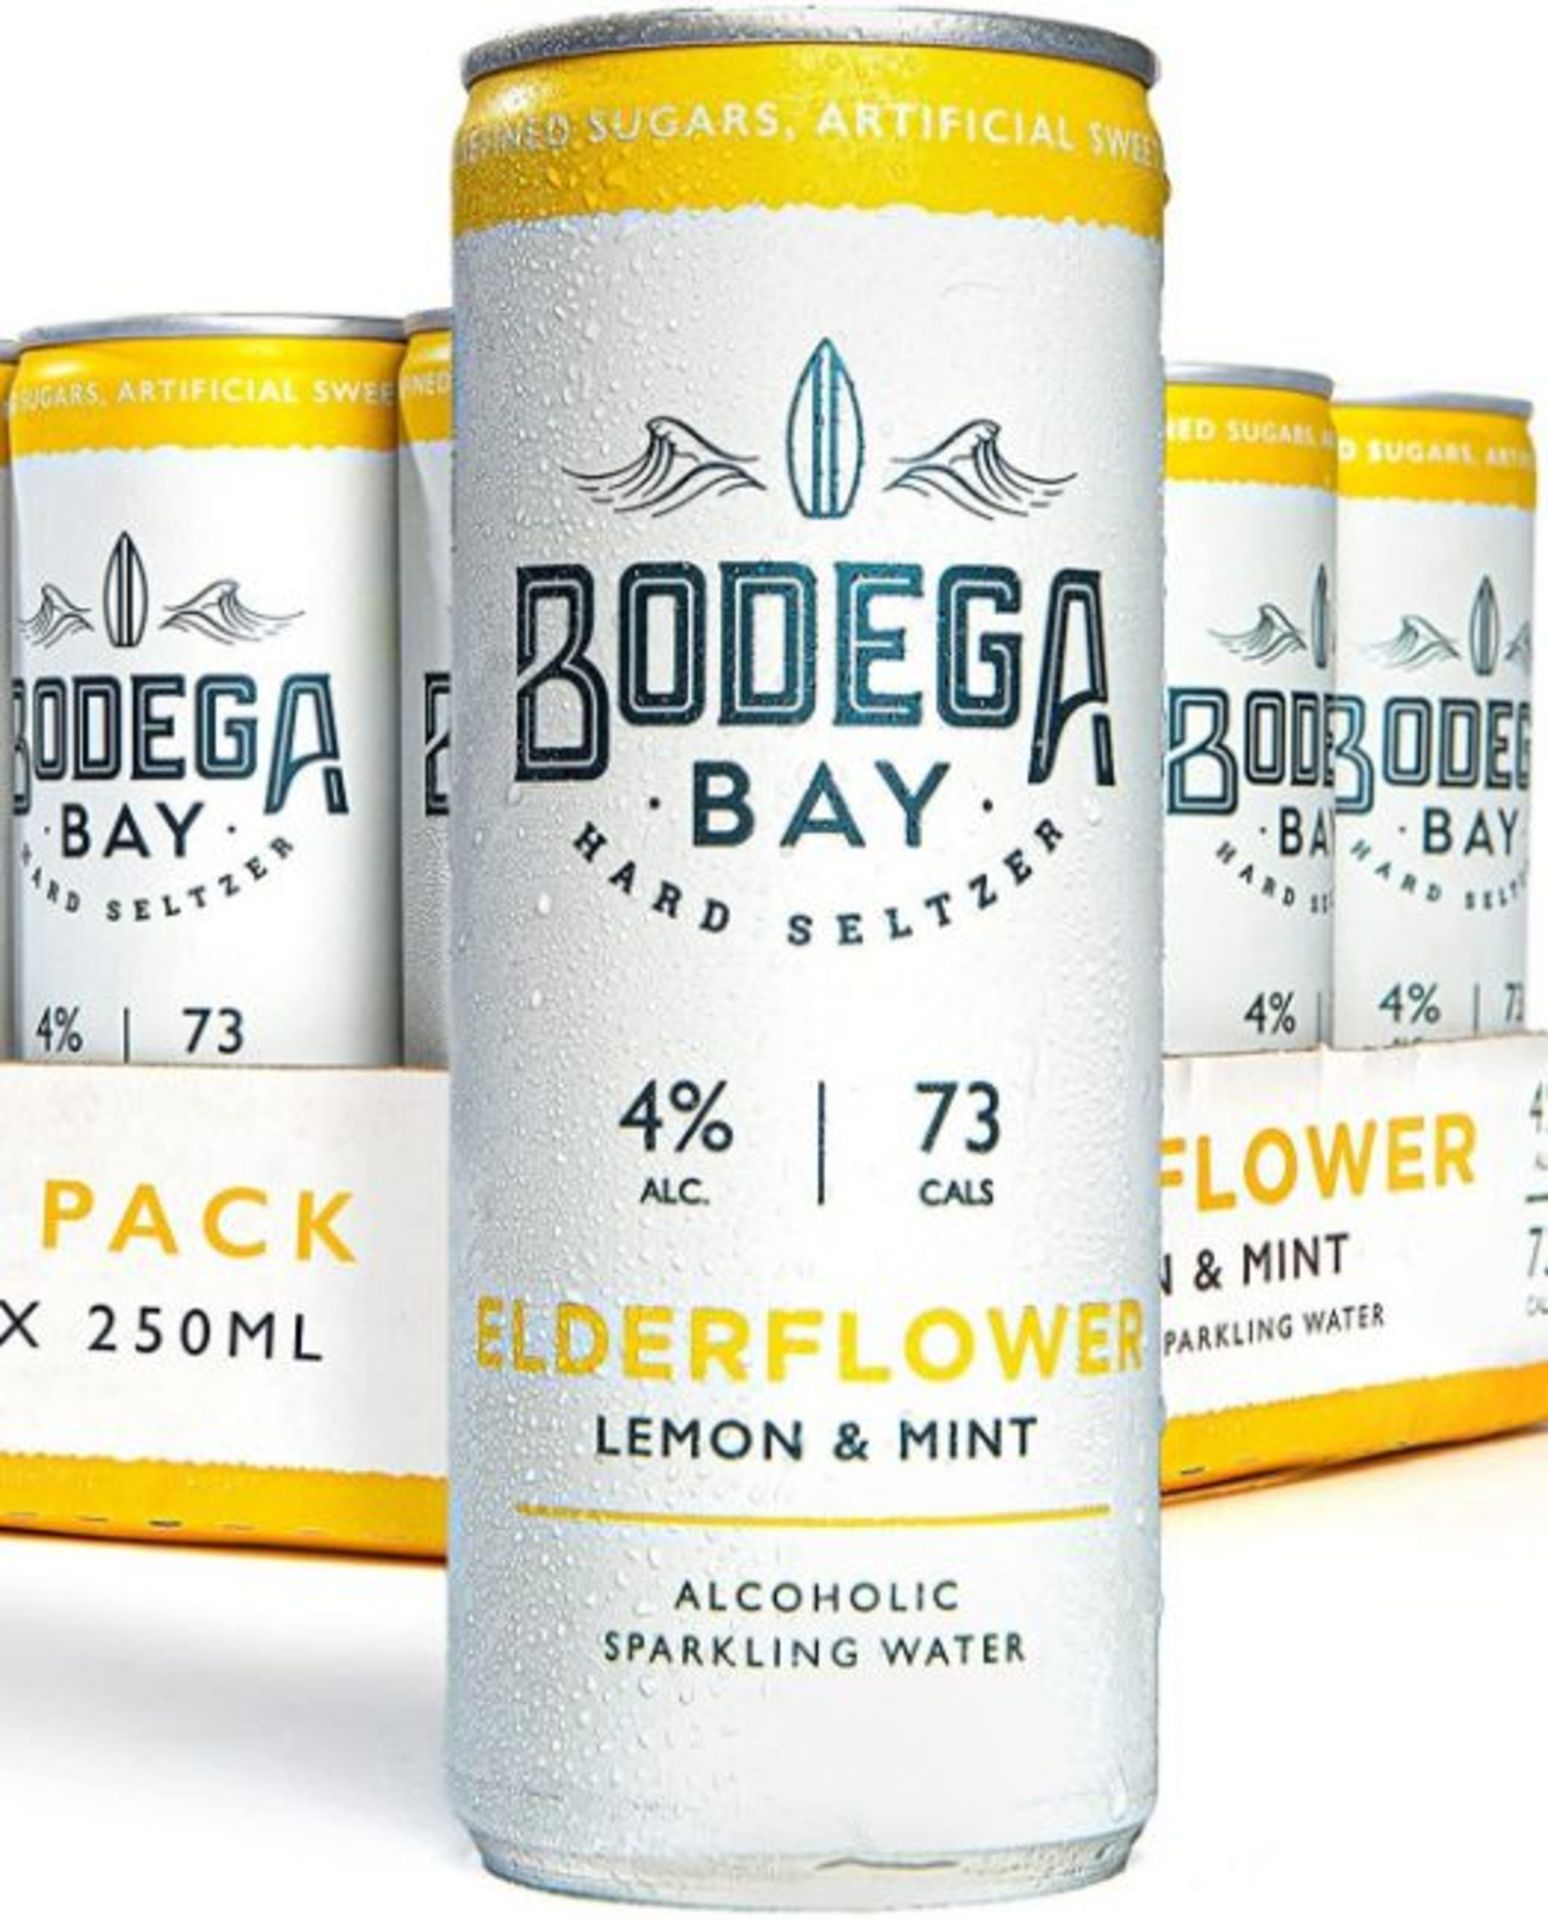 24 x Bodega Bay Hard Seltzer 250ml Alcoholic Sparkling Water Drinks - Elderflower Lemon & Mint - Image 2 of 9